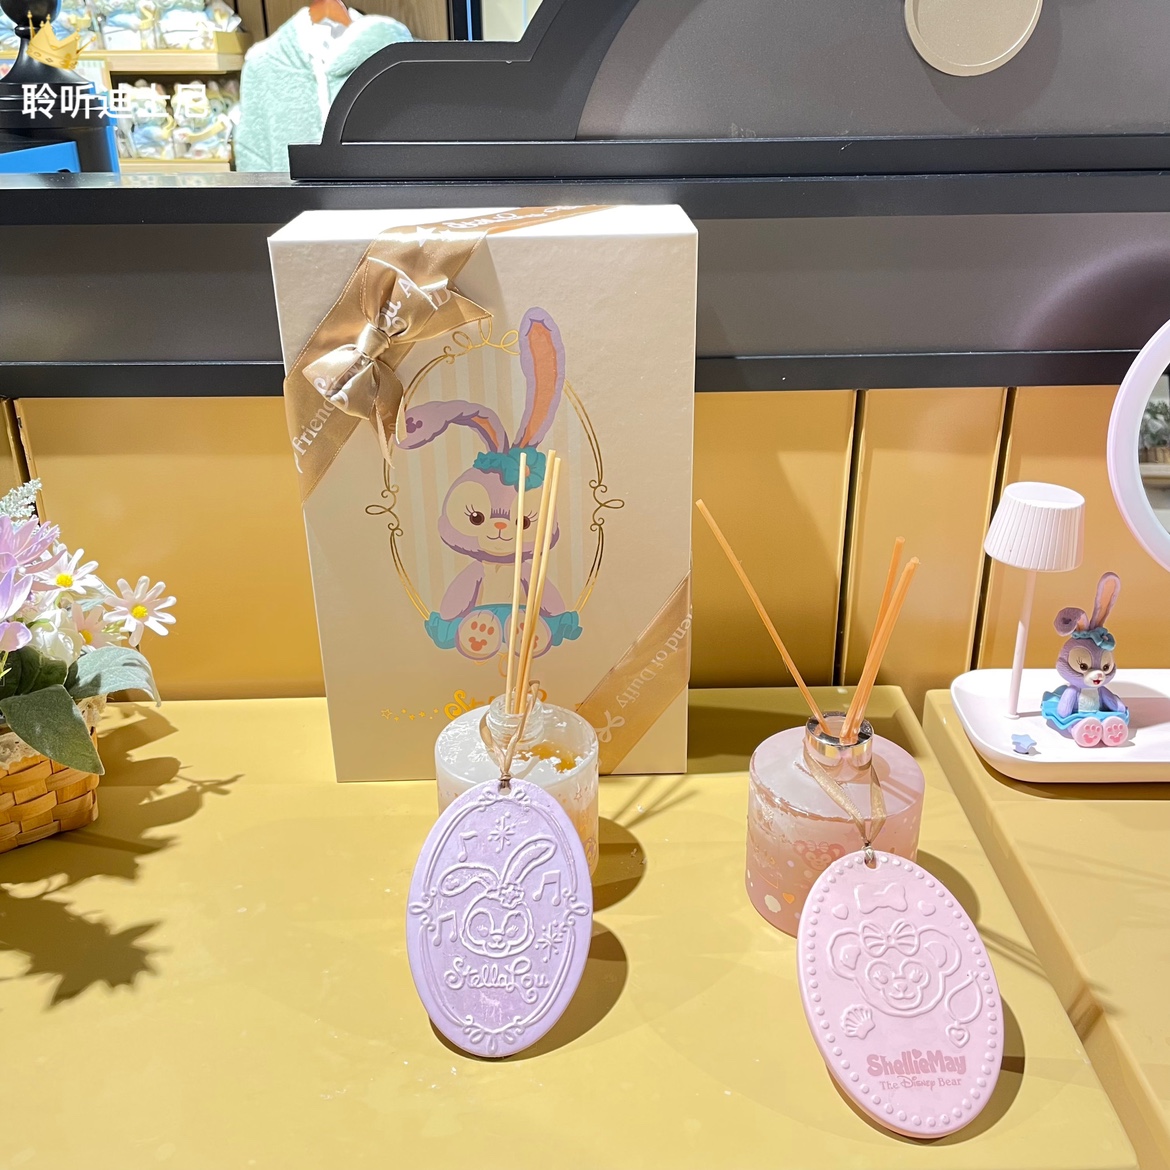 上海迪士尼国内代购星戴露史黛拉兔子卡通可爱香薰套装生日礼物